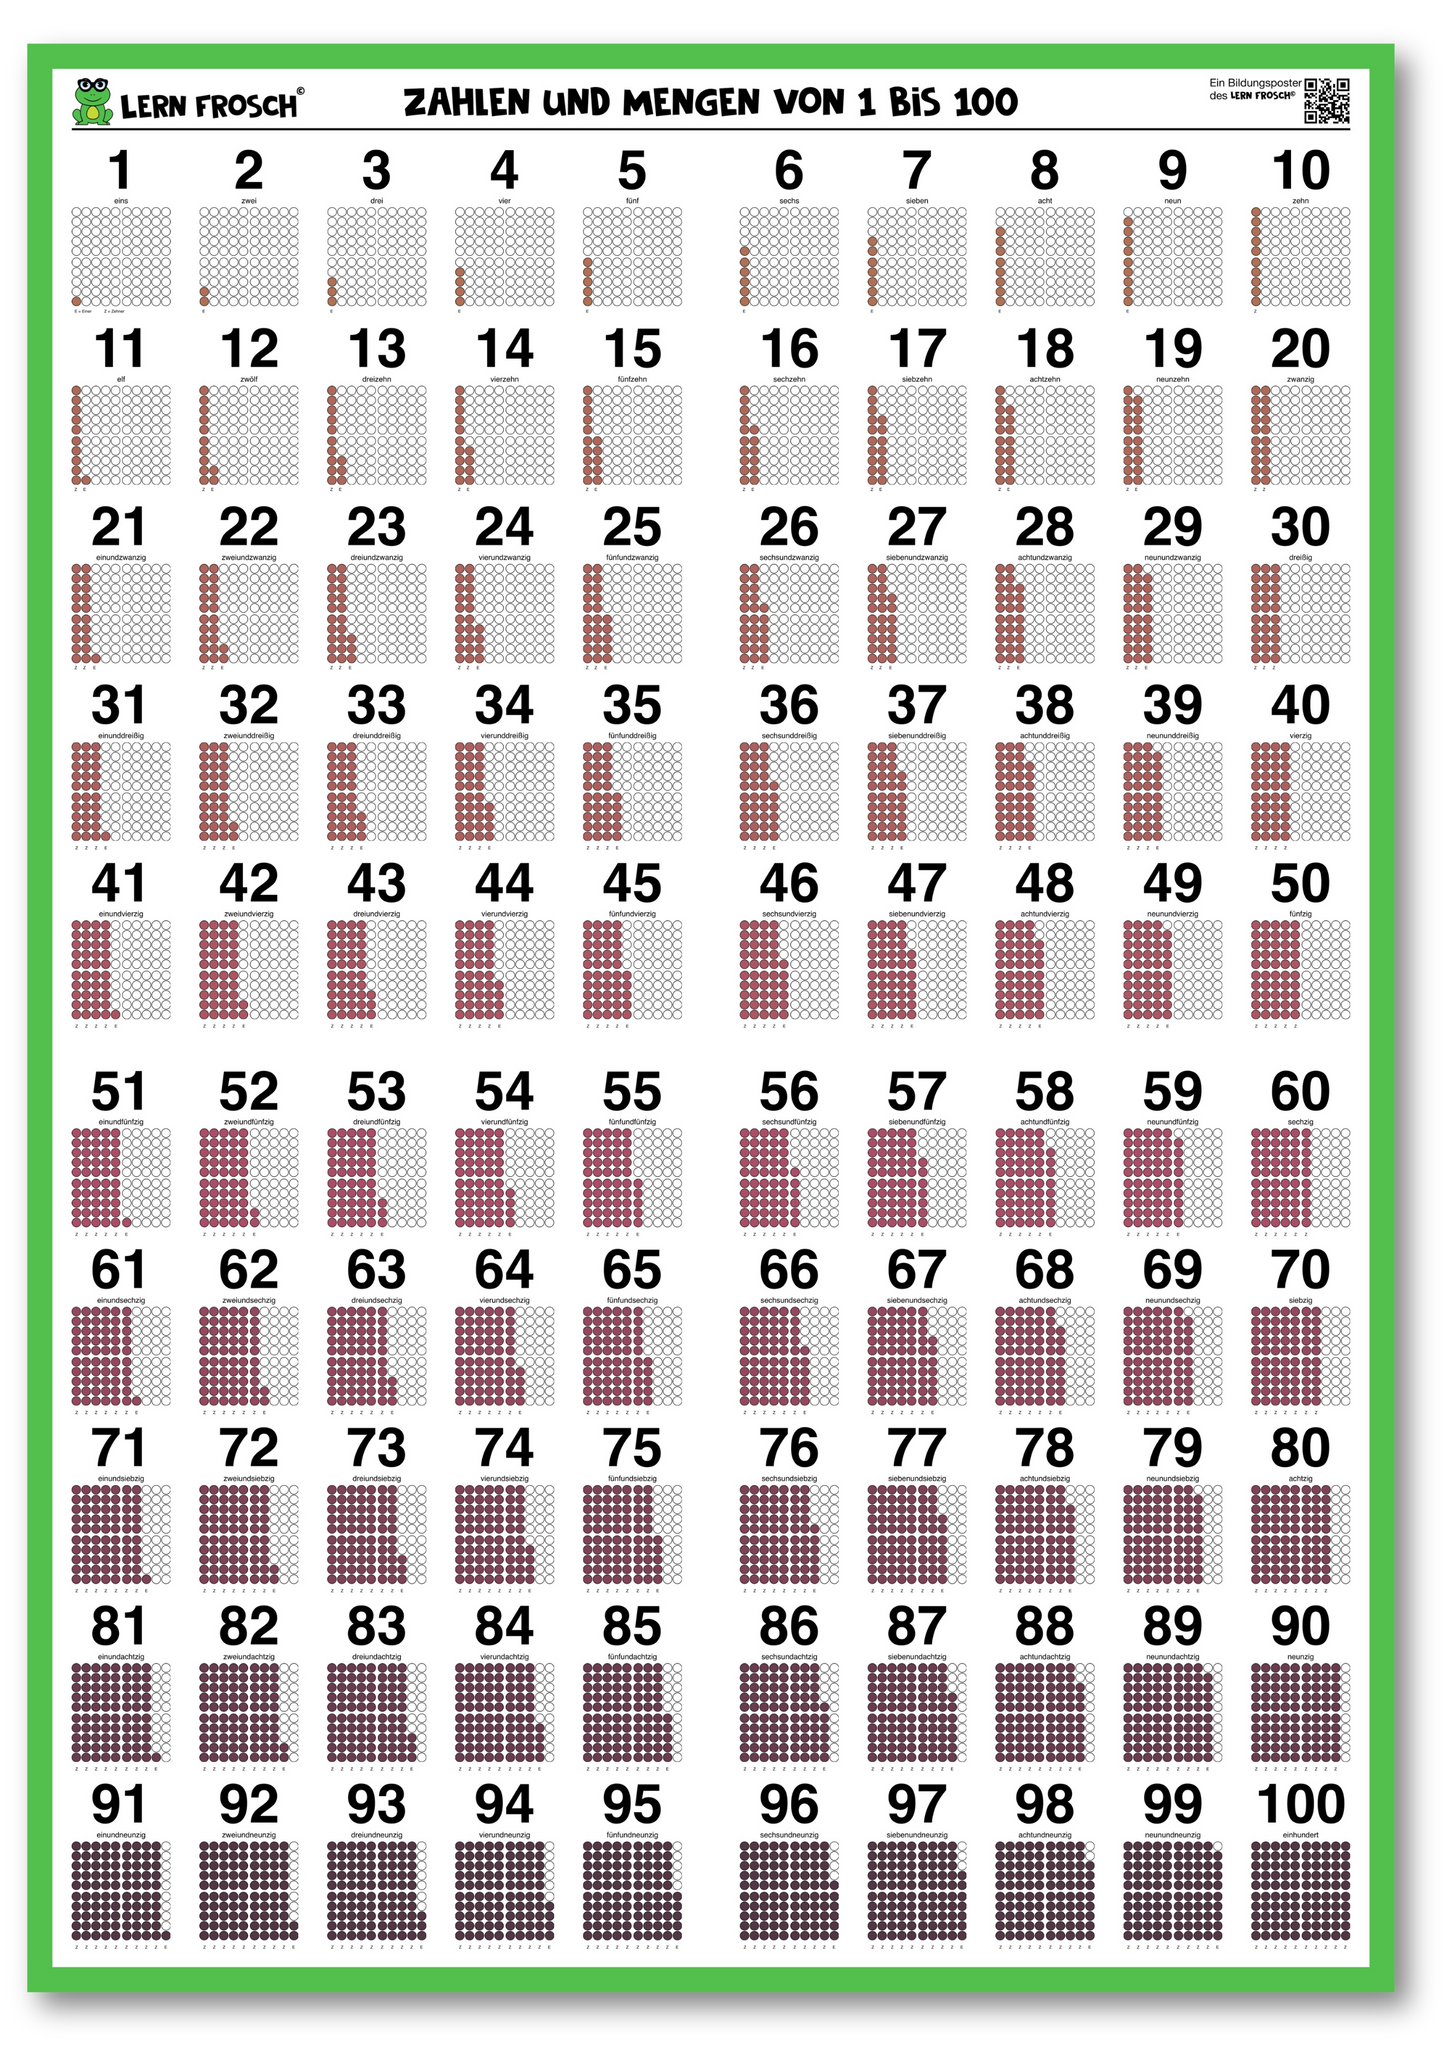 Lern Frosch® Zahlenposter mit den Zahlen 1 bis 100 | Zahlen lernen visualisiert, ausgeschrieben und als Ziffer | für die Grundschule und Deutsch lernende